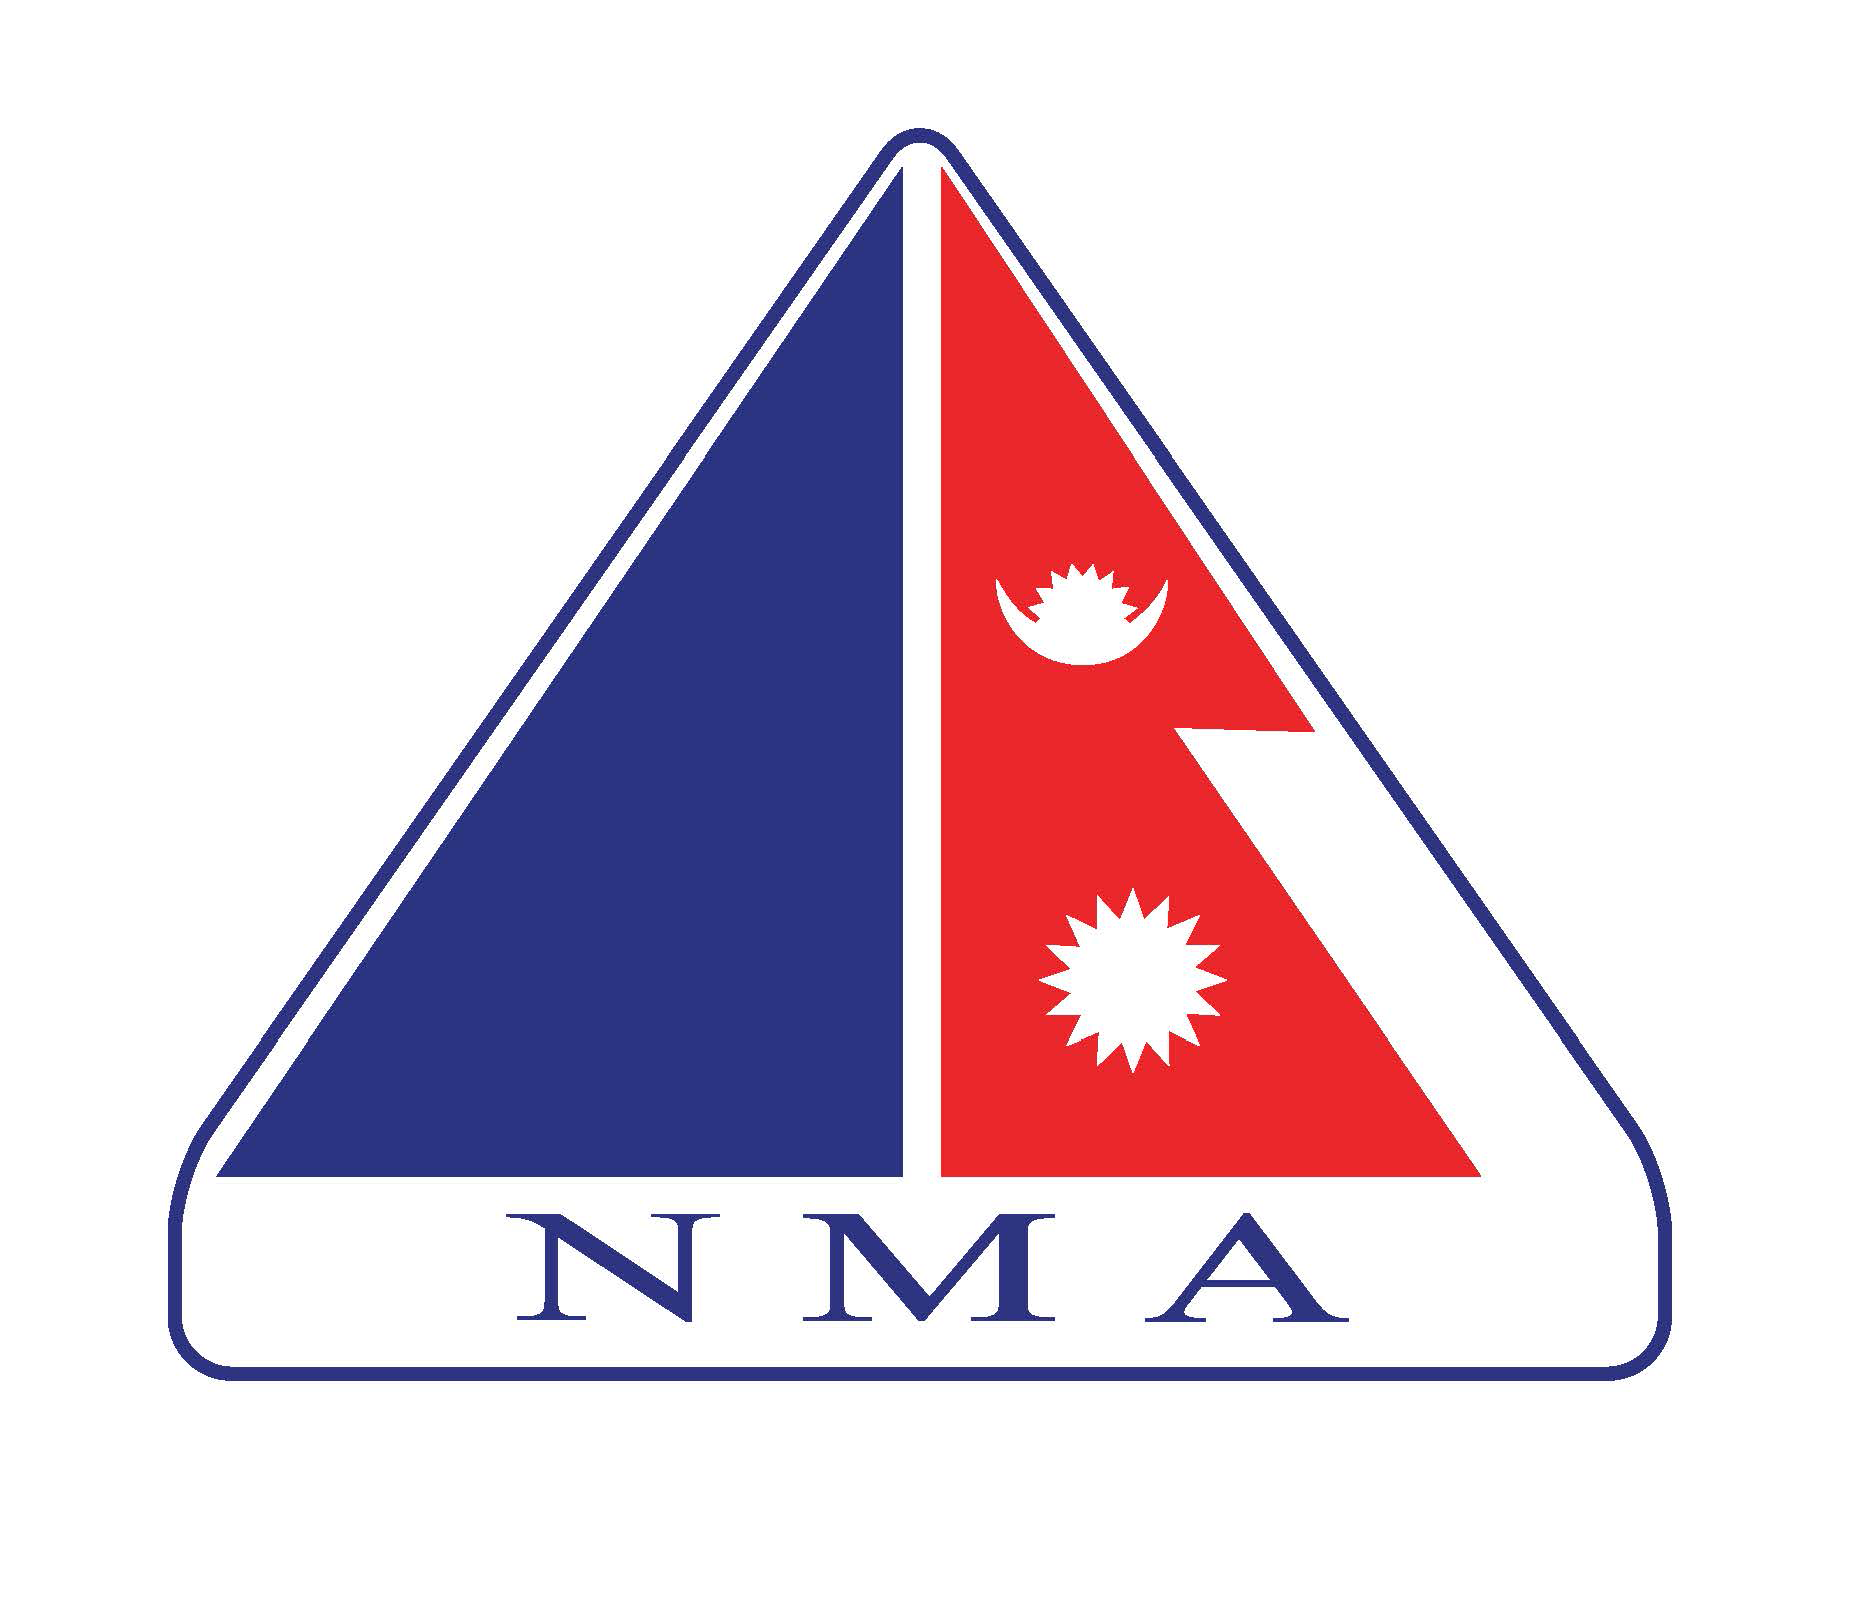 Nepal Tourism Board